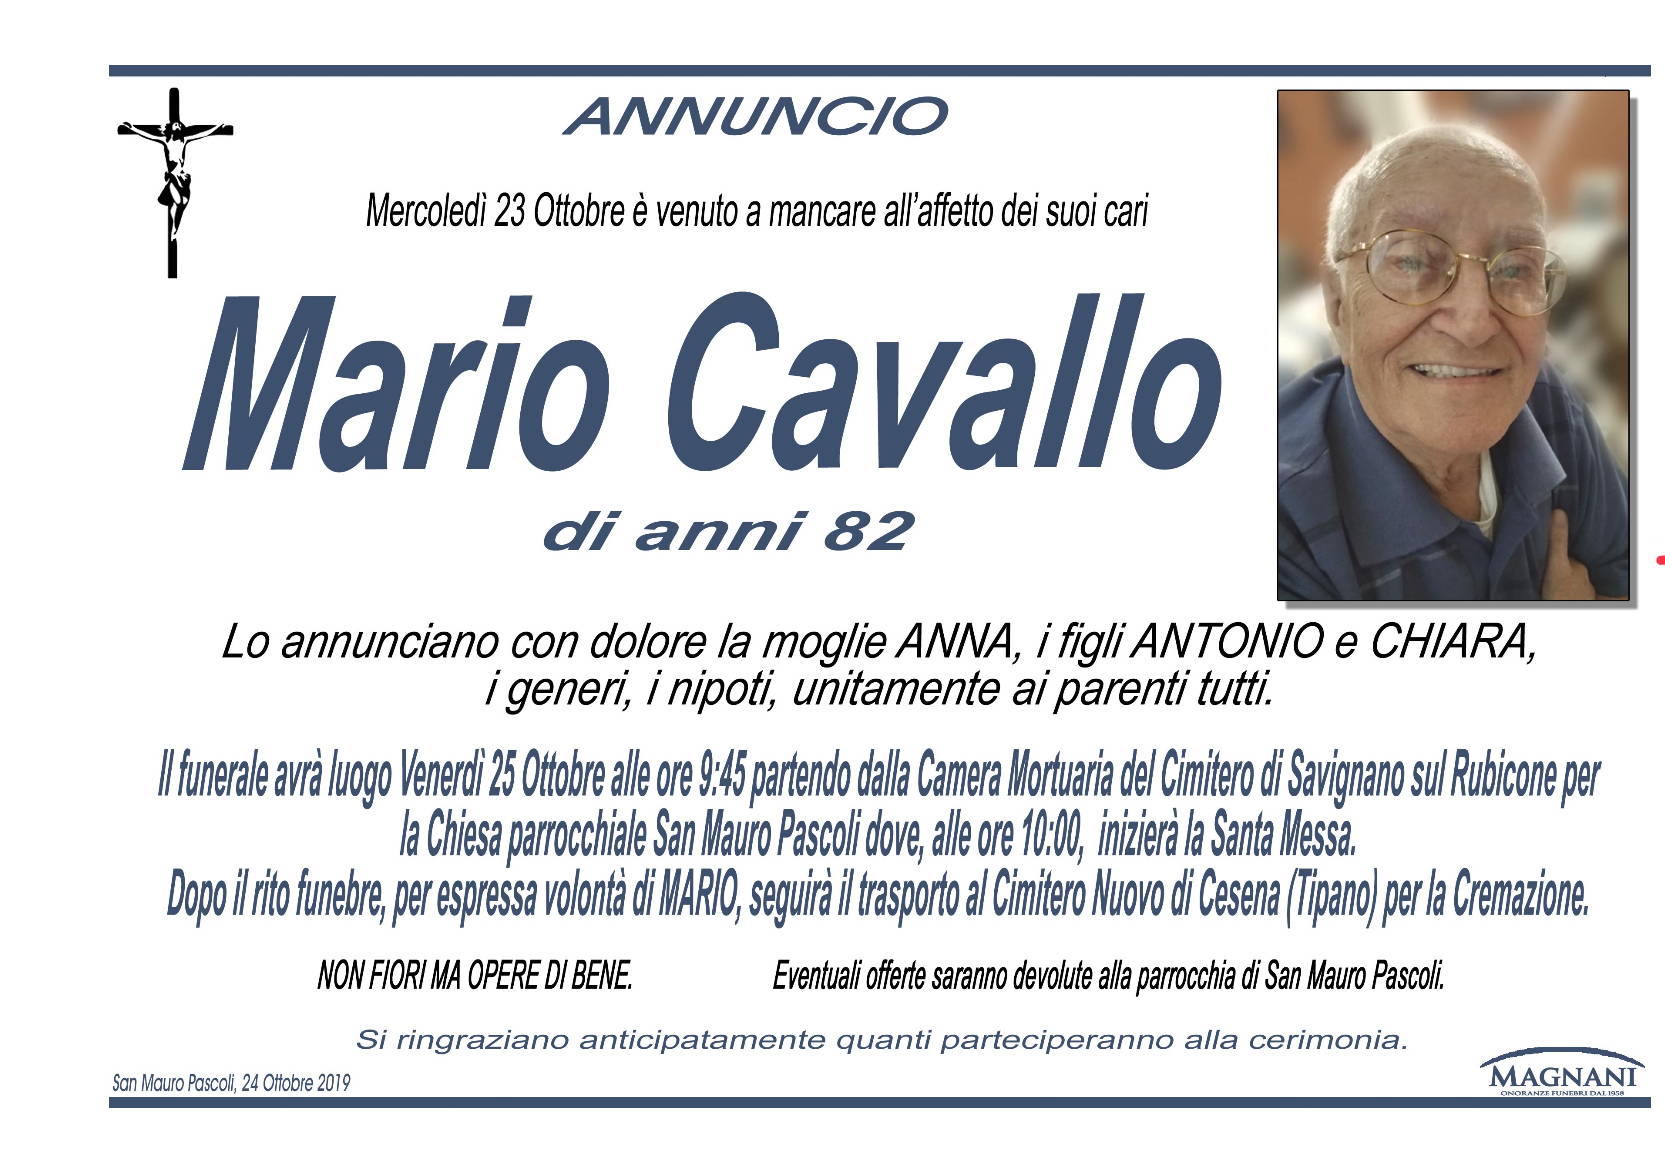 Mario Cavallo